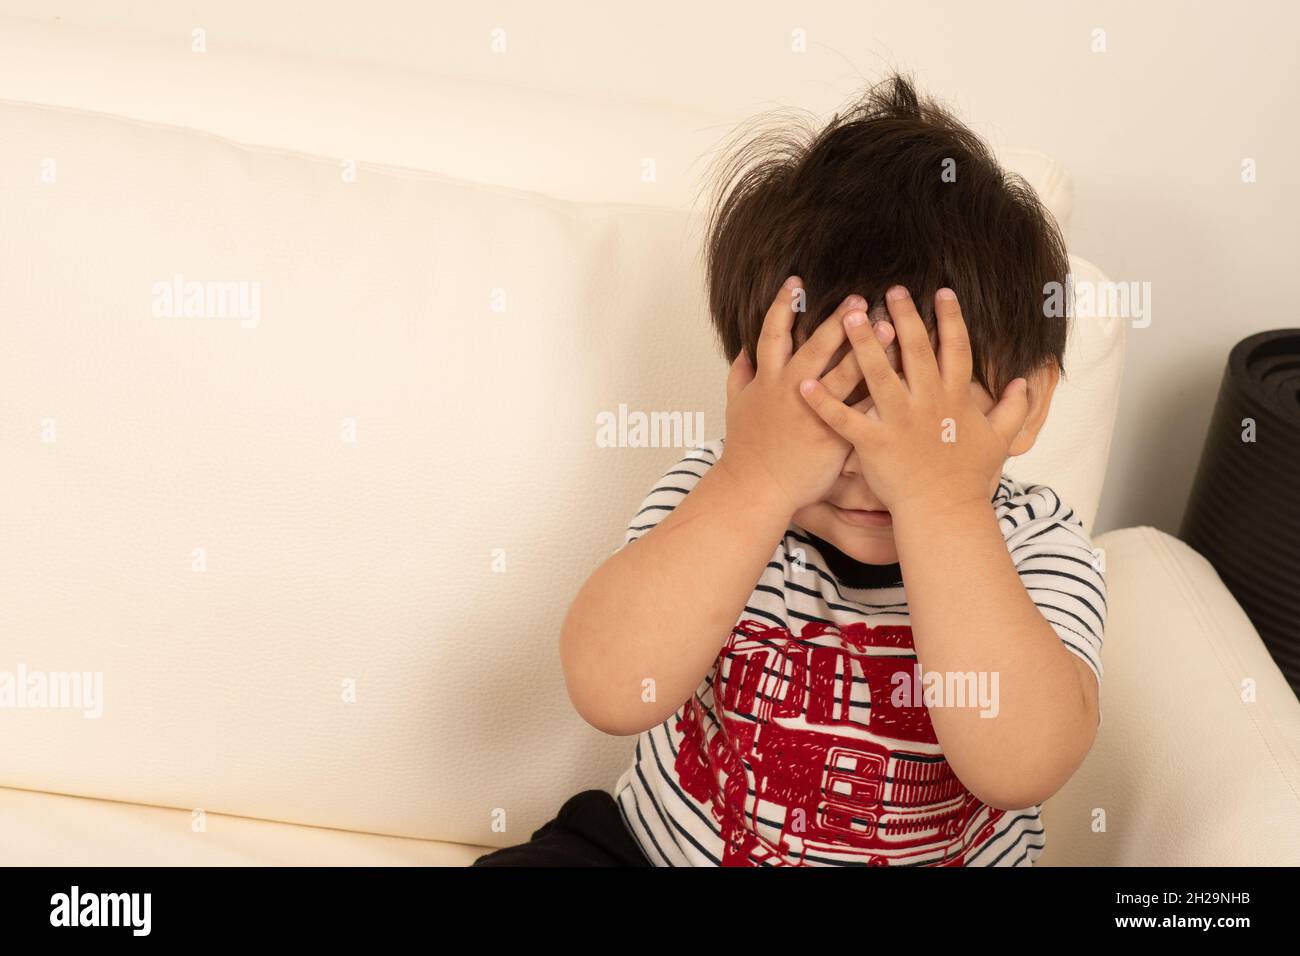 1 von 2 zweijährigen Jungen, der sich hinter seinen Händen versteckt, gucken einen Buh Stockfoto